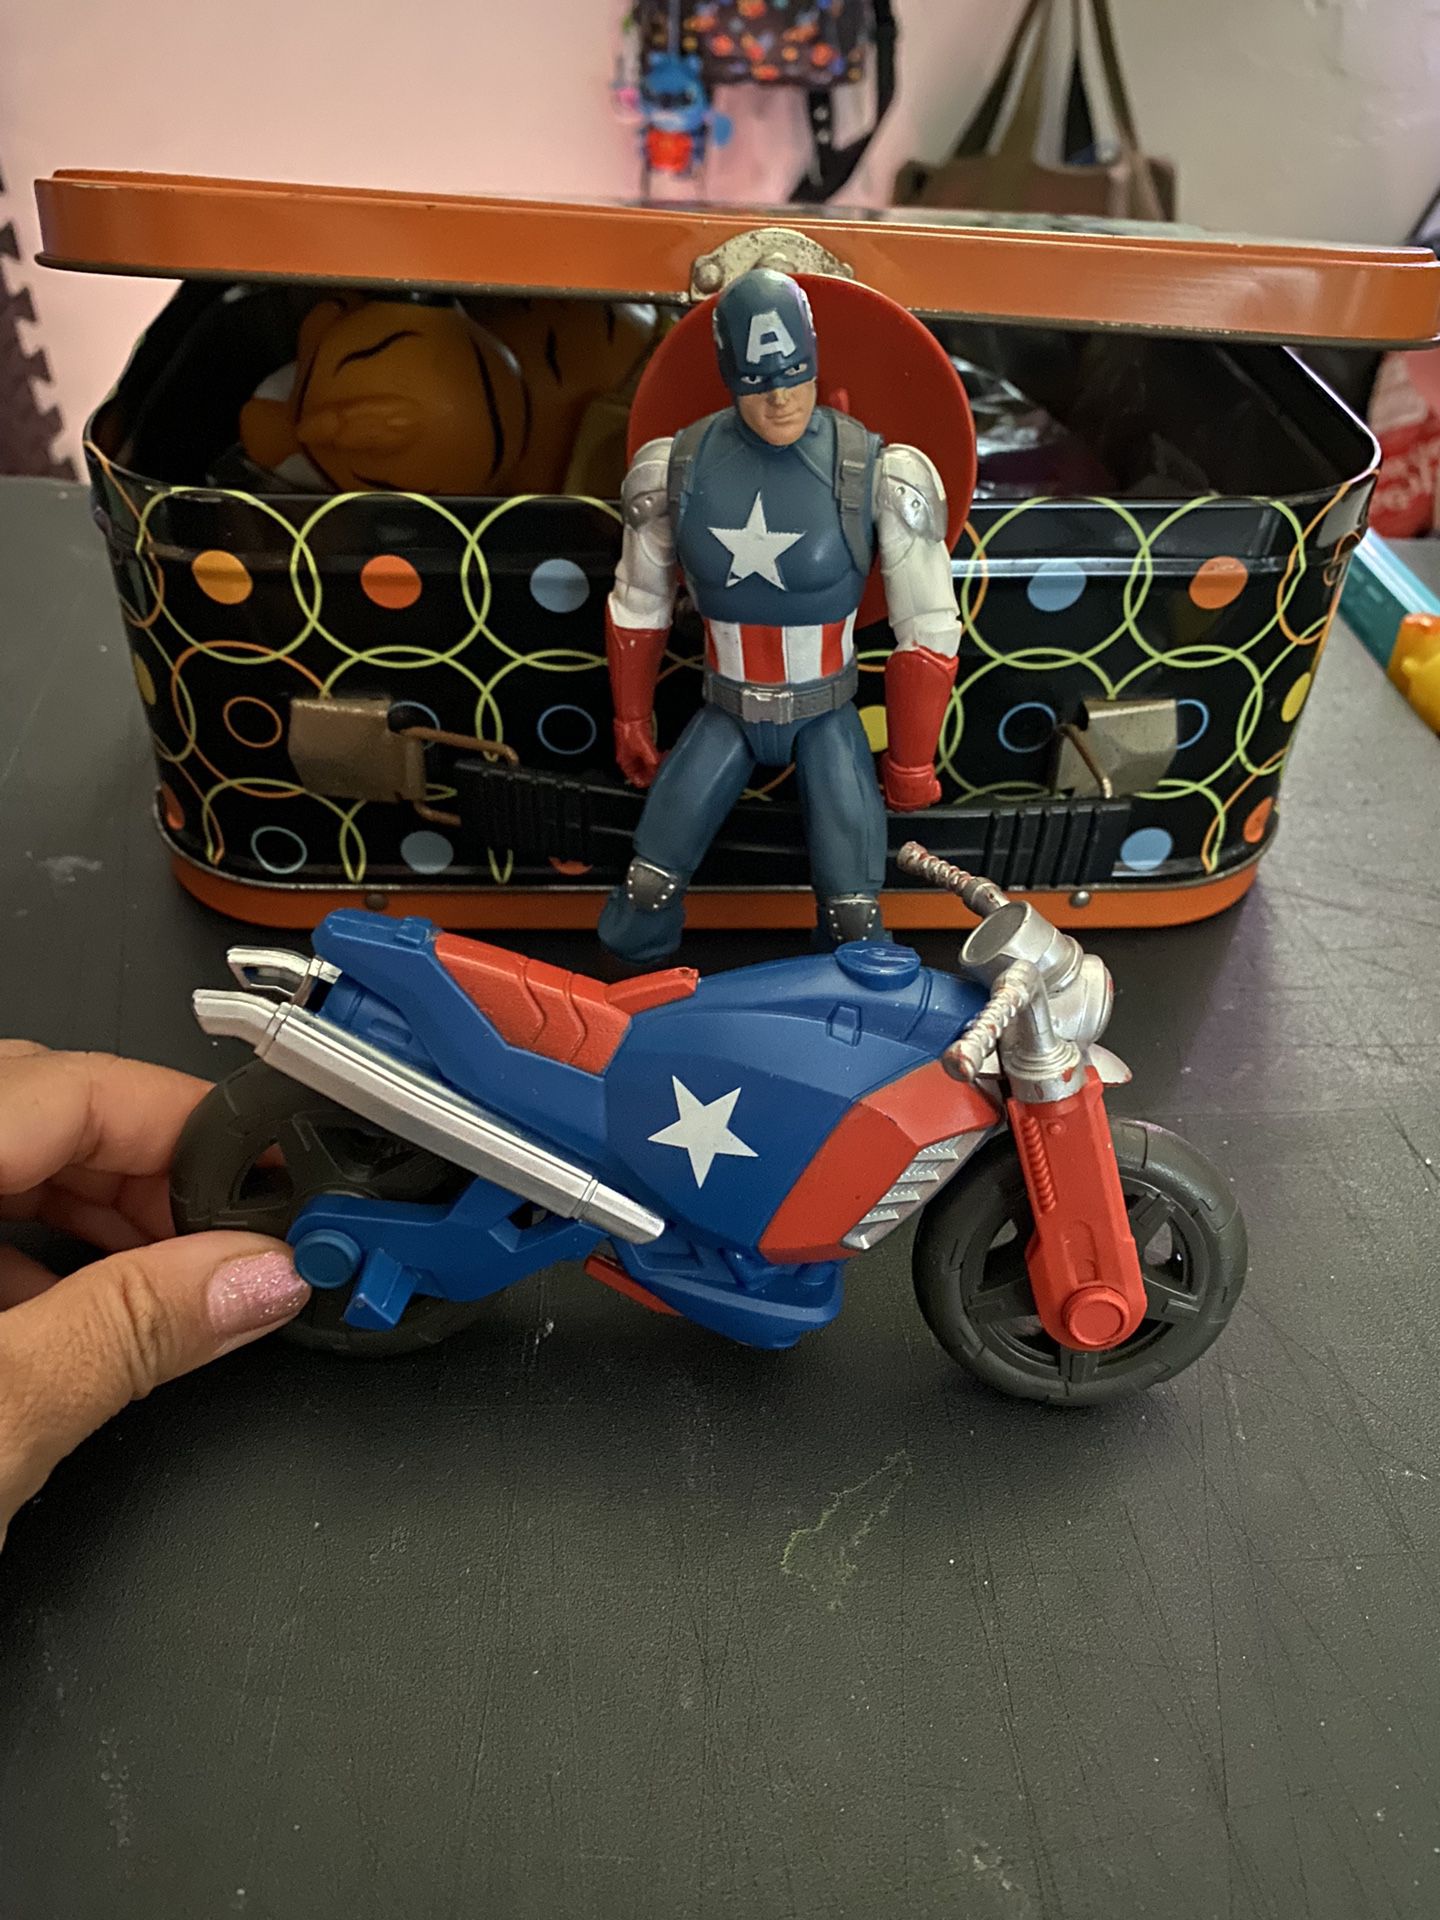 Captain America 🇺🇸 n motorcycle 